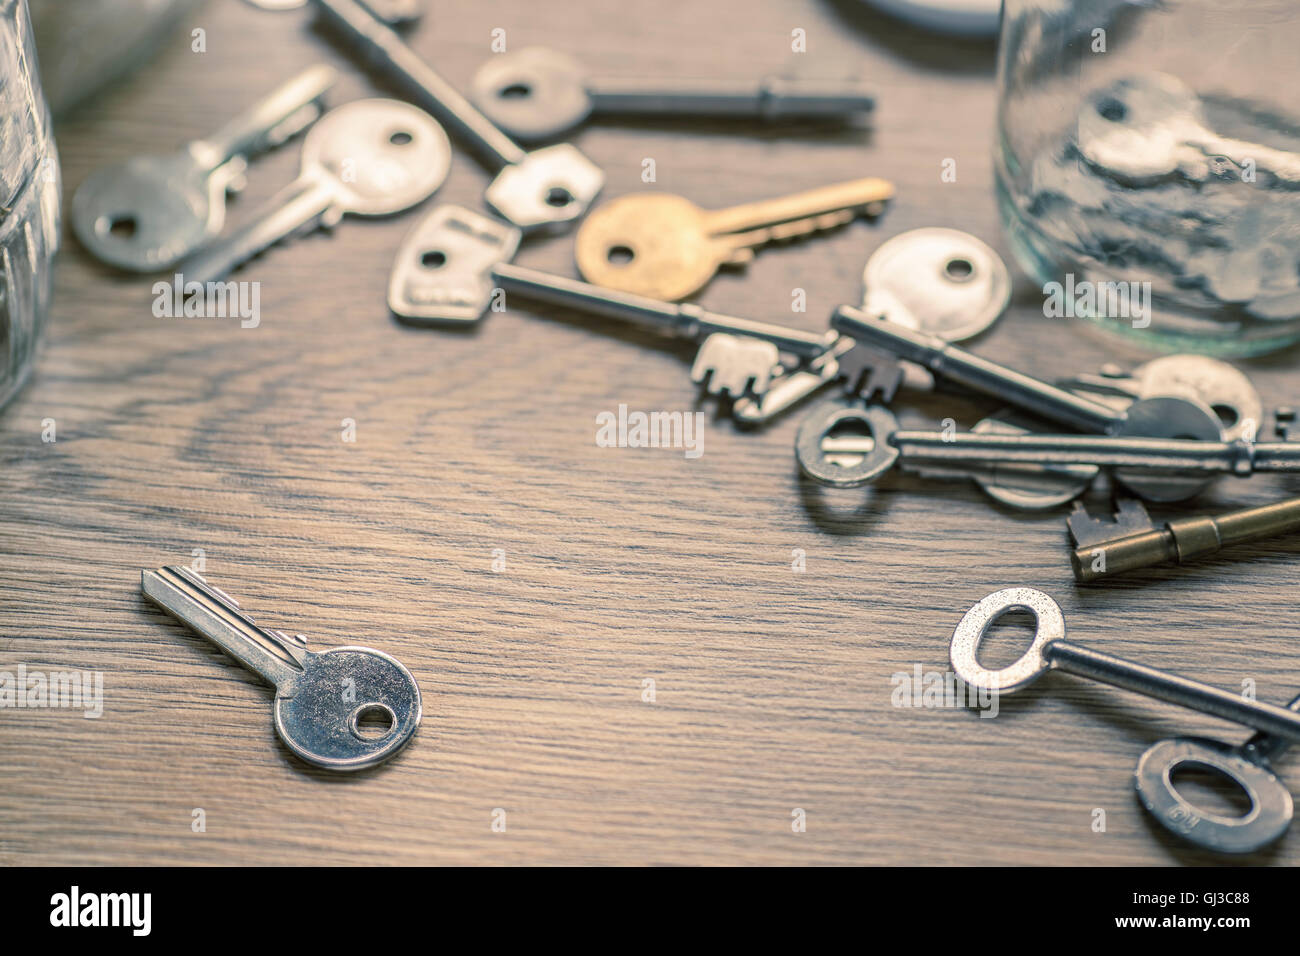 Keys on wooden surface Stock Photo